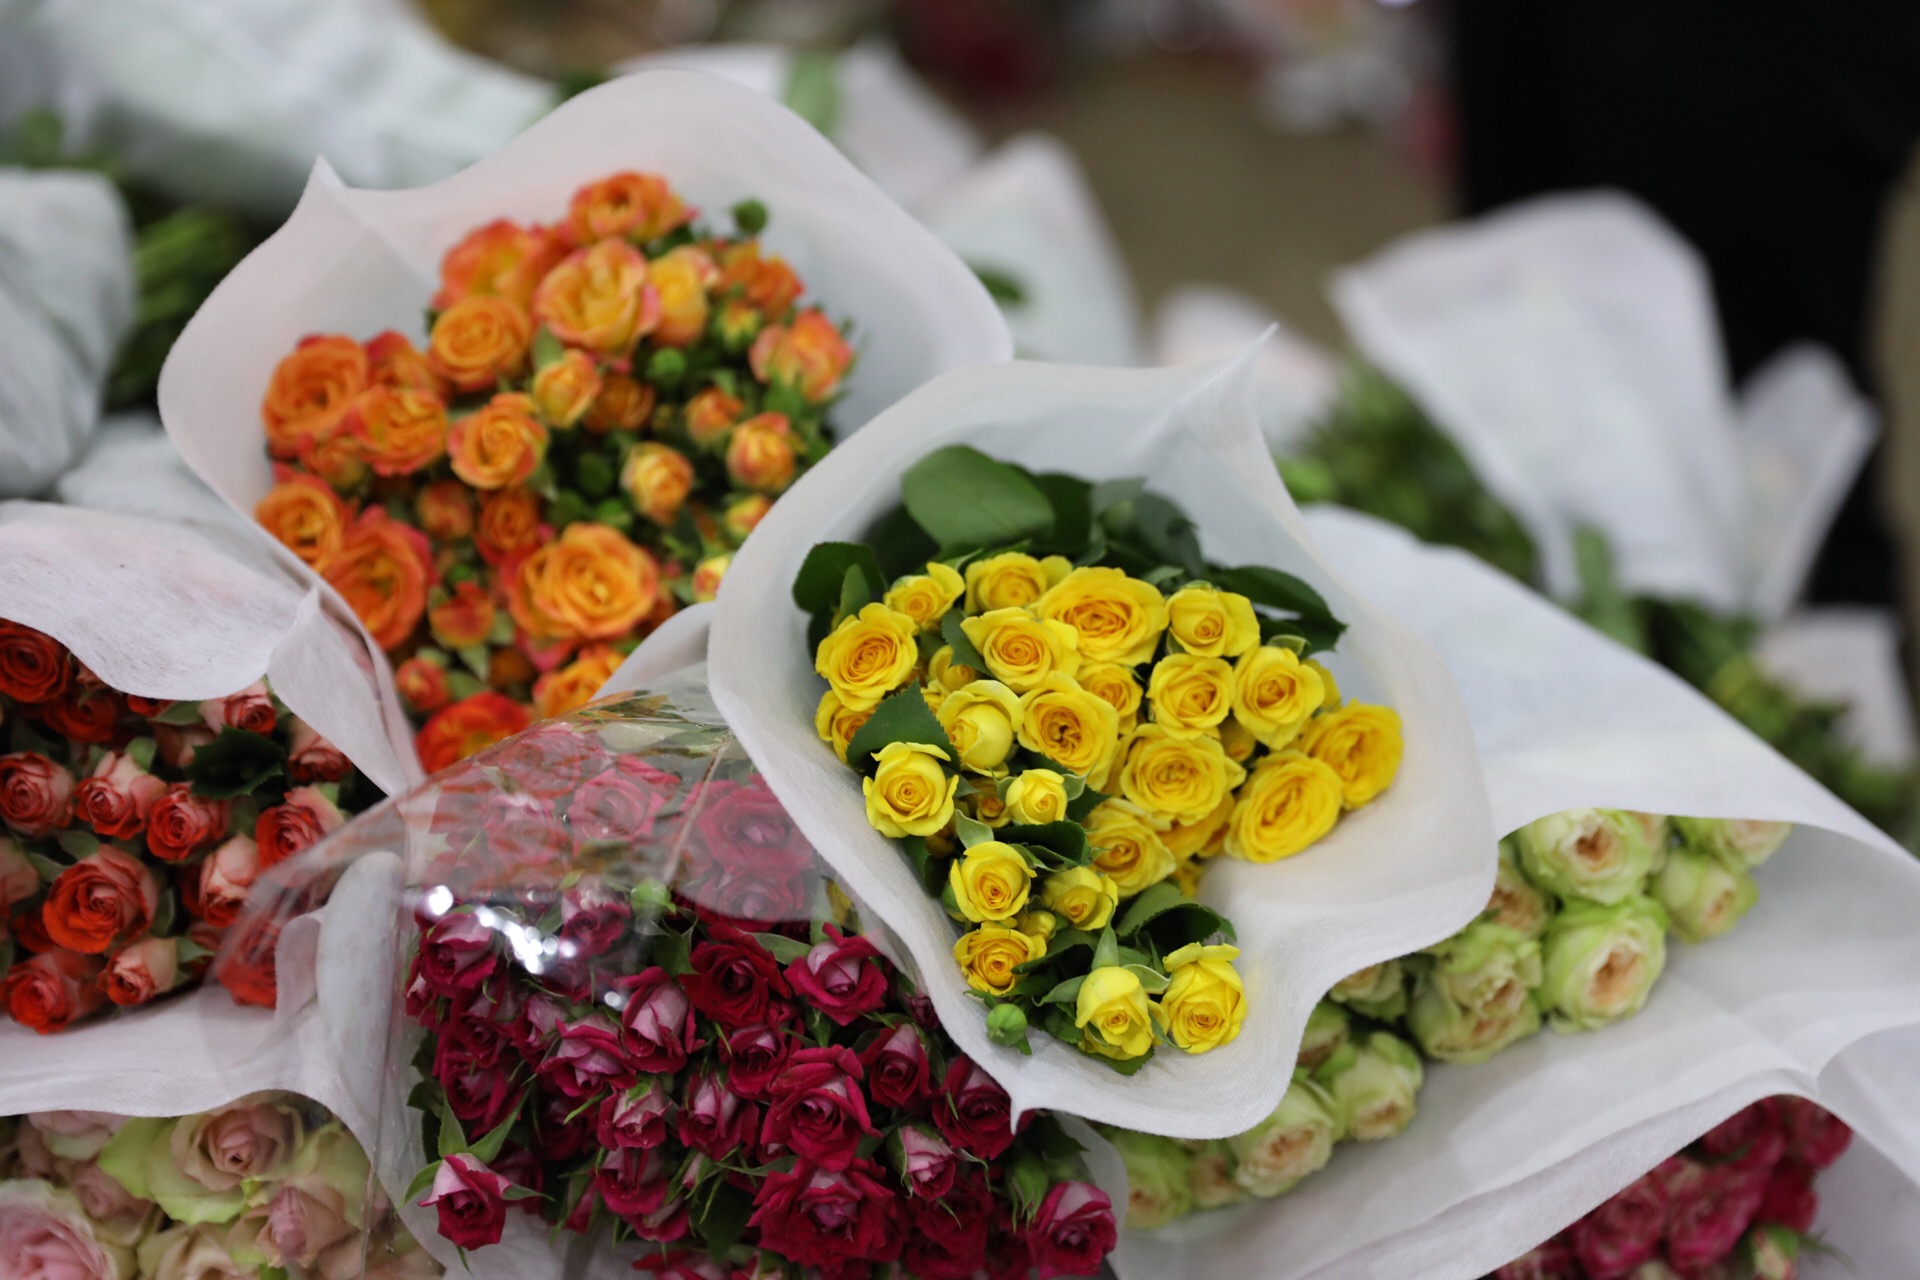 原创云南斗南花卉市场——鲜花价格论斤卖,一大束玫瑰只要几元钱